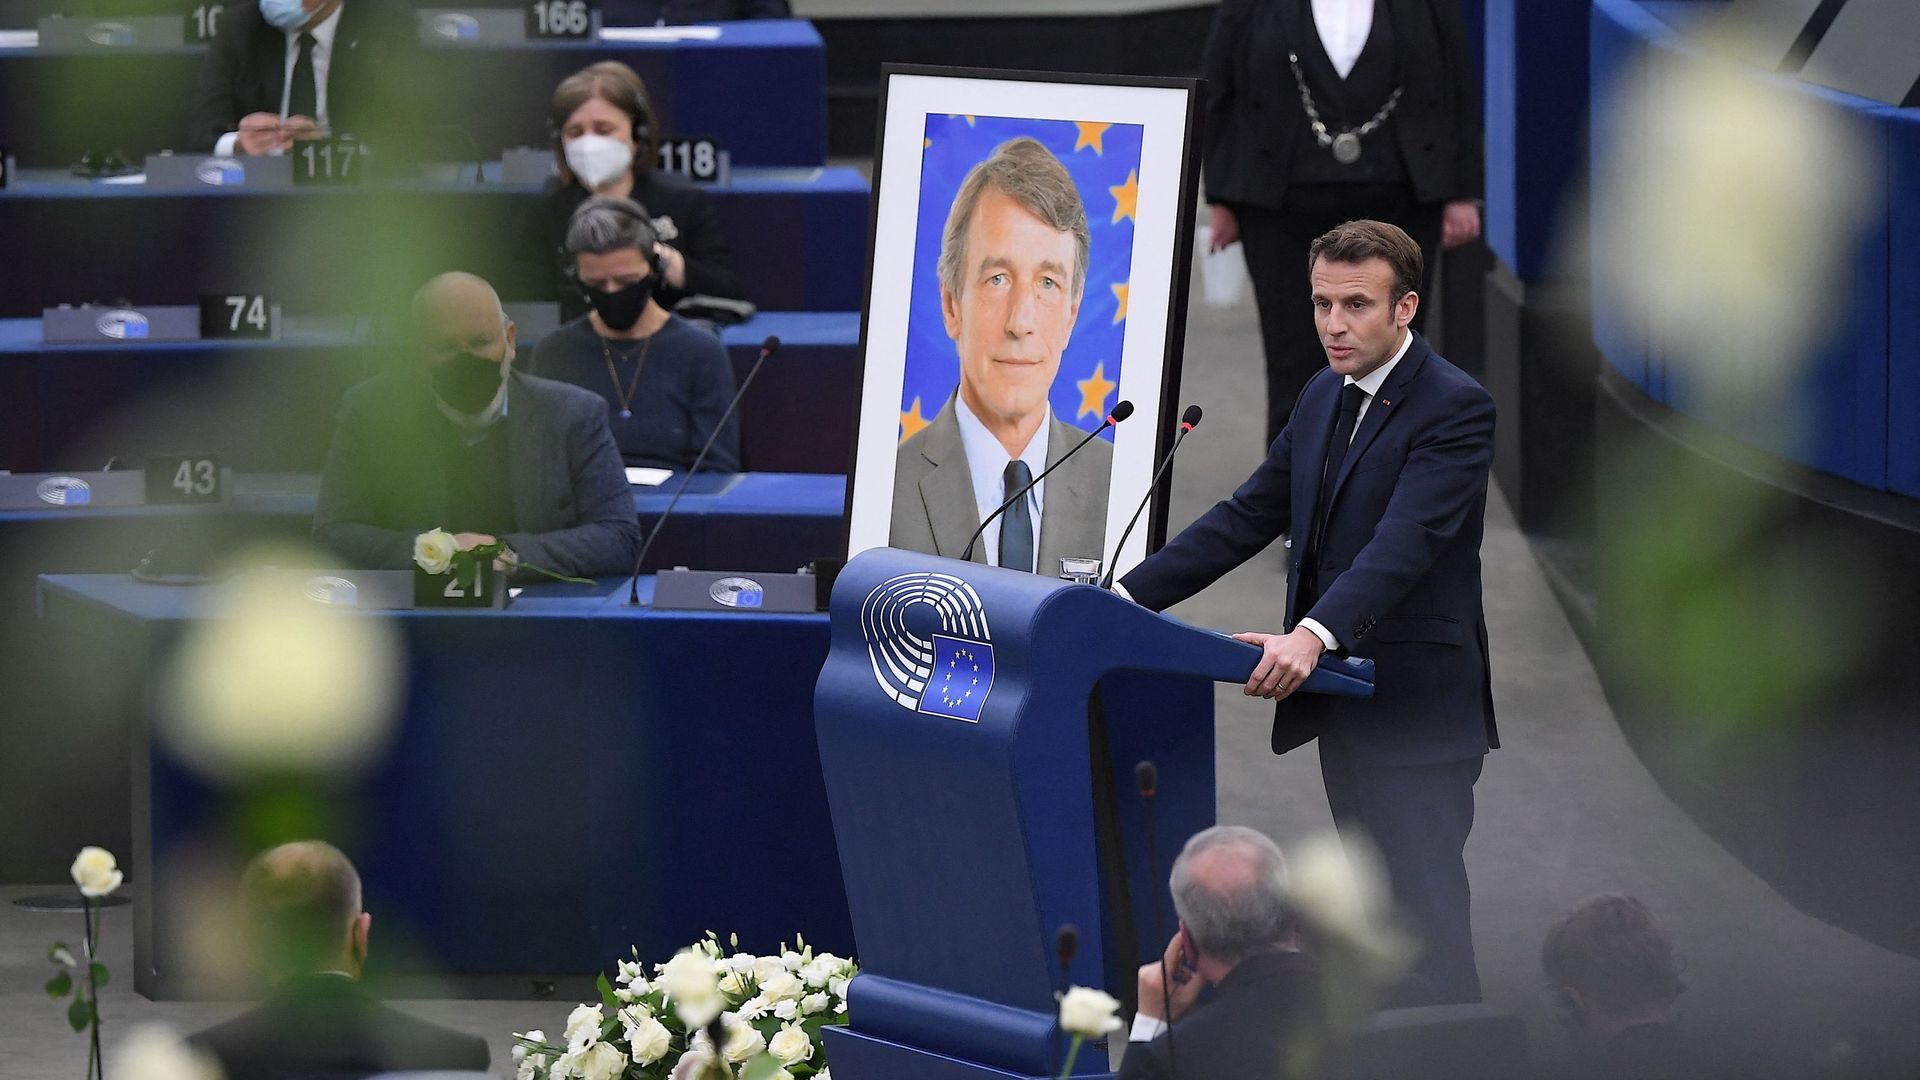 Le président français Emmanuel Macron prononce un discours lors d'un hommage au défunt président du Parlement européen, David Sassoli, au Parlement européen à Strasbourg, le 17 janvier 2022.